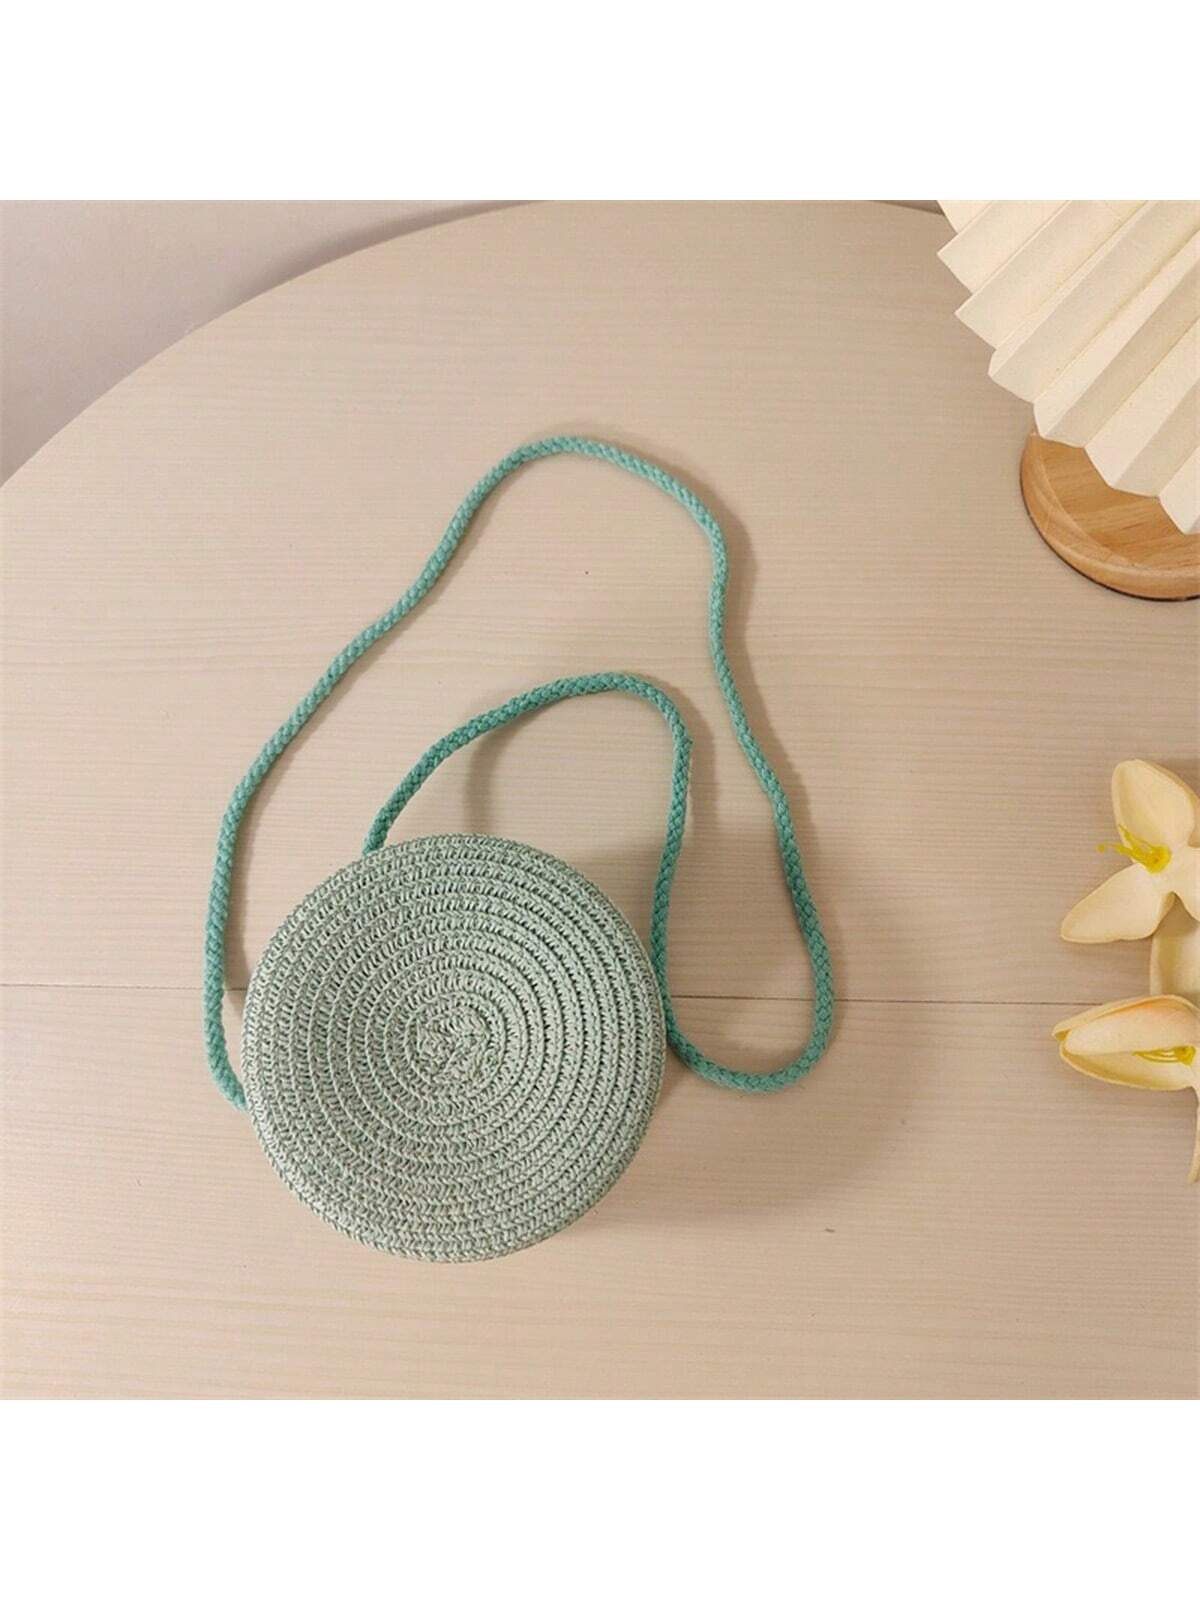 Мини-минималистичная соломенная сумка Простая круглая соломенная сумка, мятно-зеленый давыдов ю соломенная сторожка